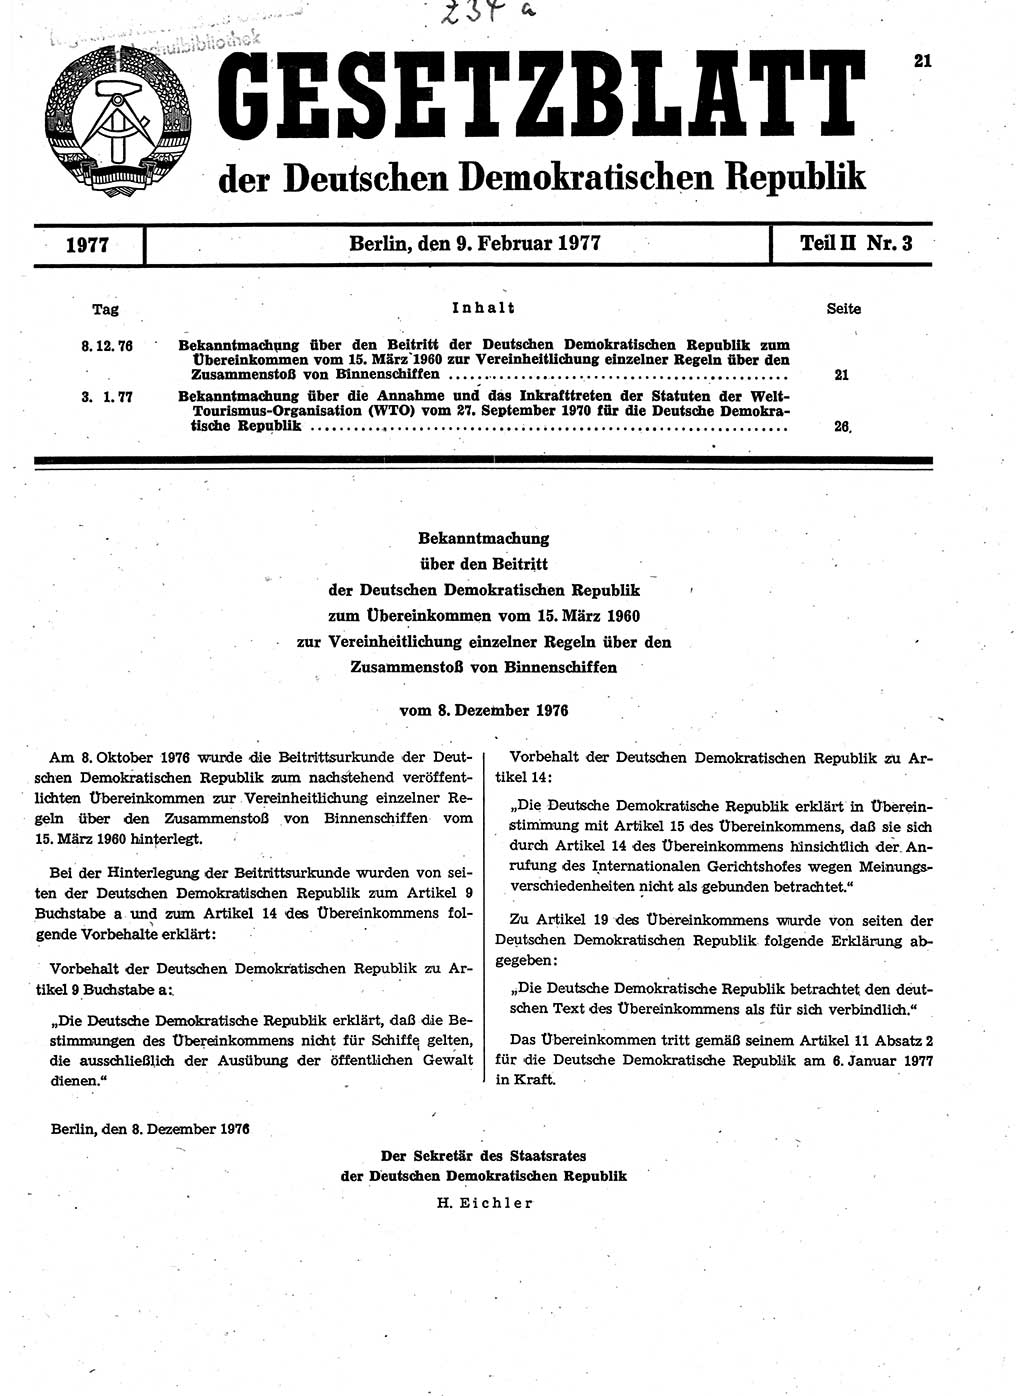 Gesetzblatt (GBl.) der Deutschen Demokratischen Republik (DDR) Teil ⅠⅠ 1977, Seite 21 (GBl. DDR ⅠⅠ 1977, S. 21)